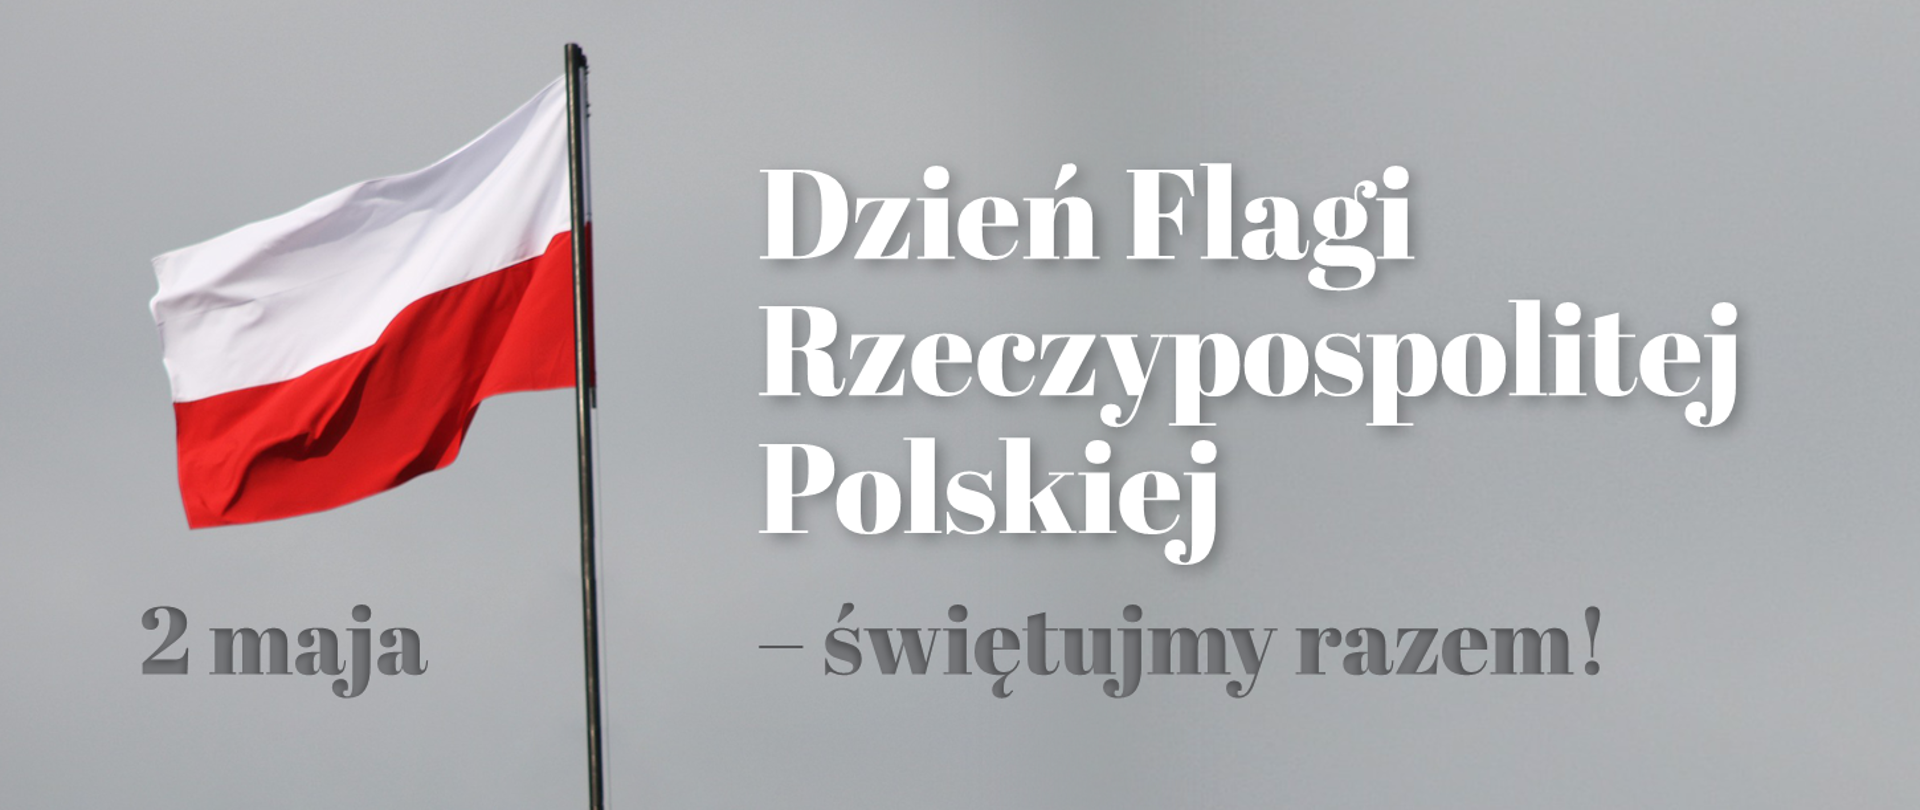 zdjęcie przedstawia planszę z szarym tłem. od lewej strony napis 2 maja, za napisem widok powiewającej polskiej flagi. Z prawej strony biały napis Dzień Flagi Rzeczpospolitej Polskiej - świętujmy razem! Dzień Flagi Rzeczpospolitej Polskiej 